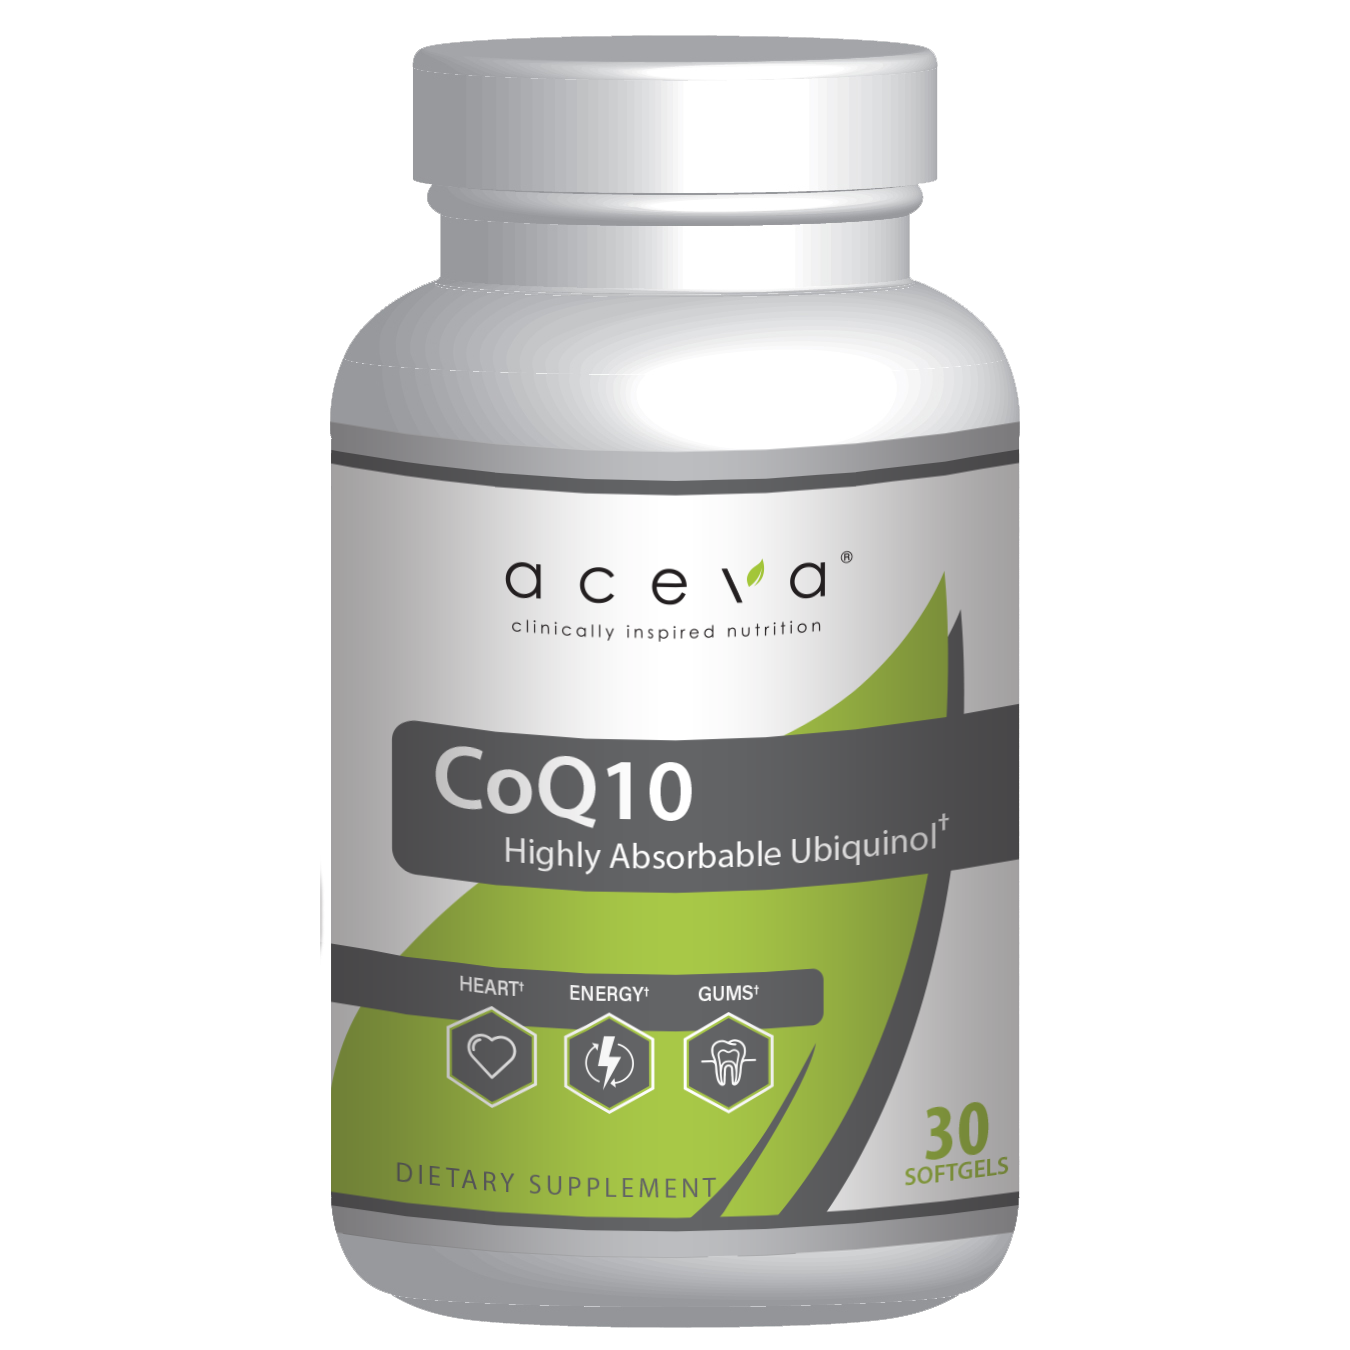 Aceva CoQ10 Bottle Image